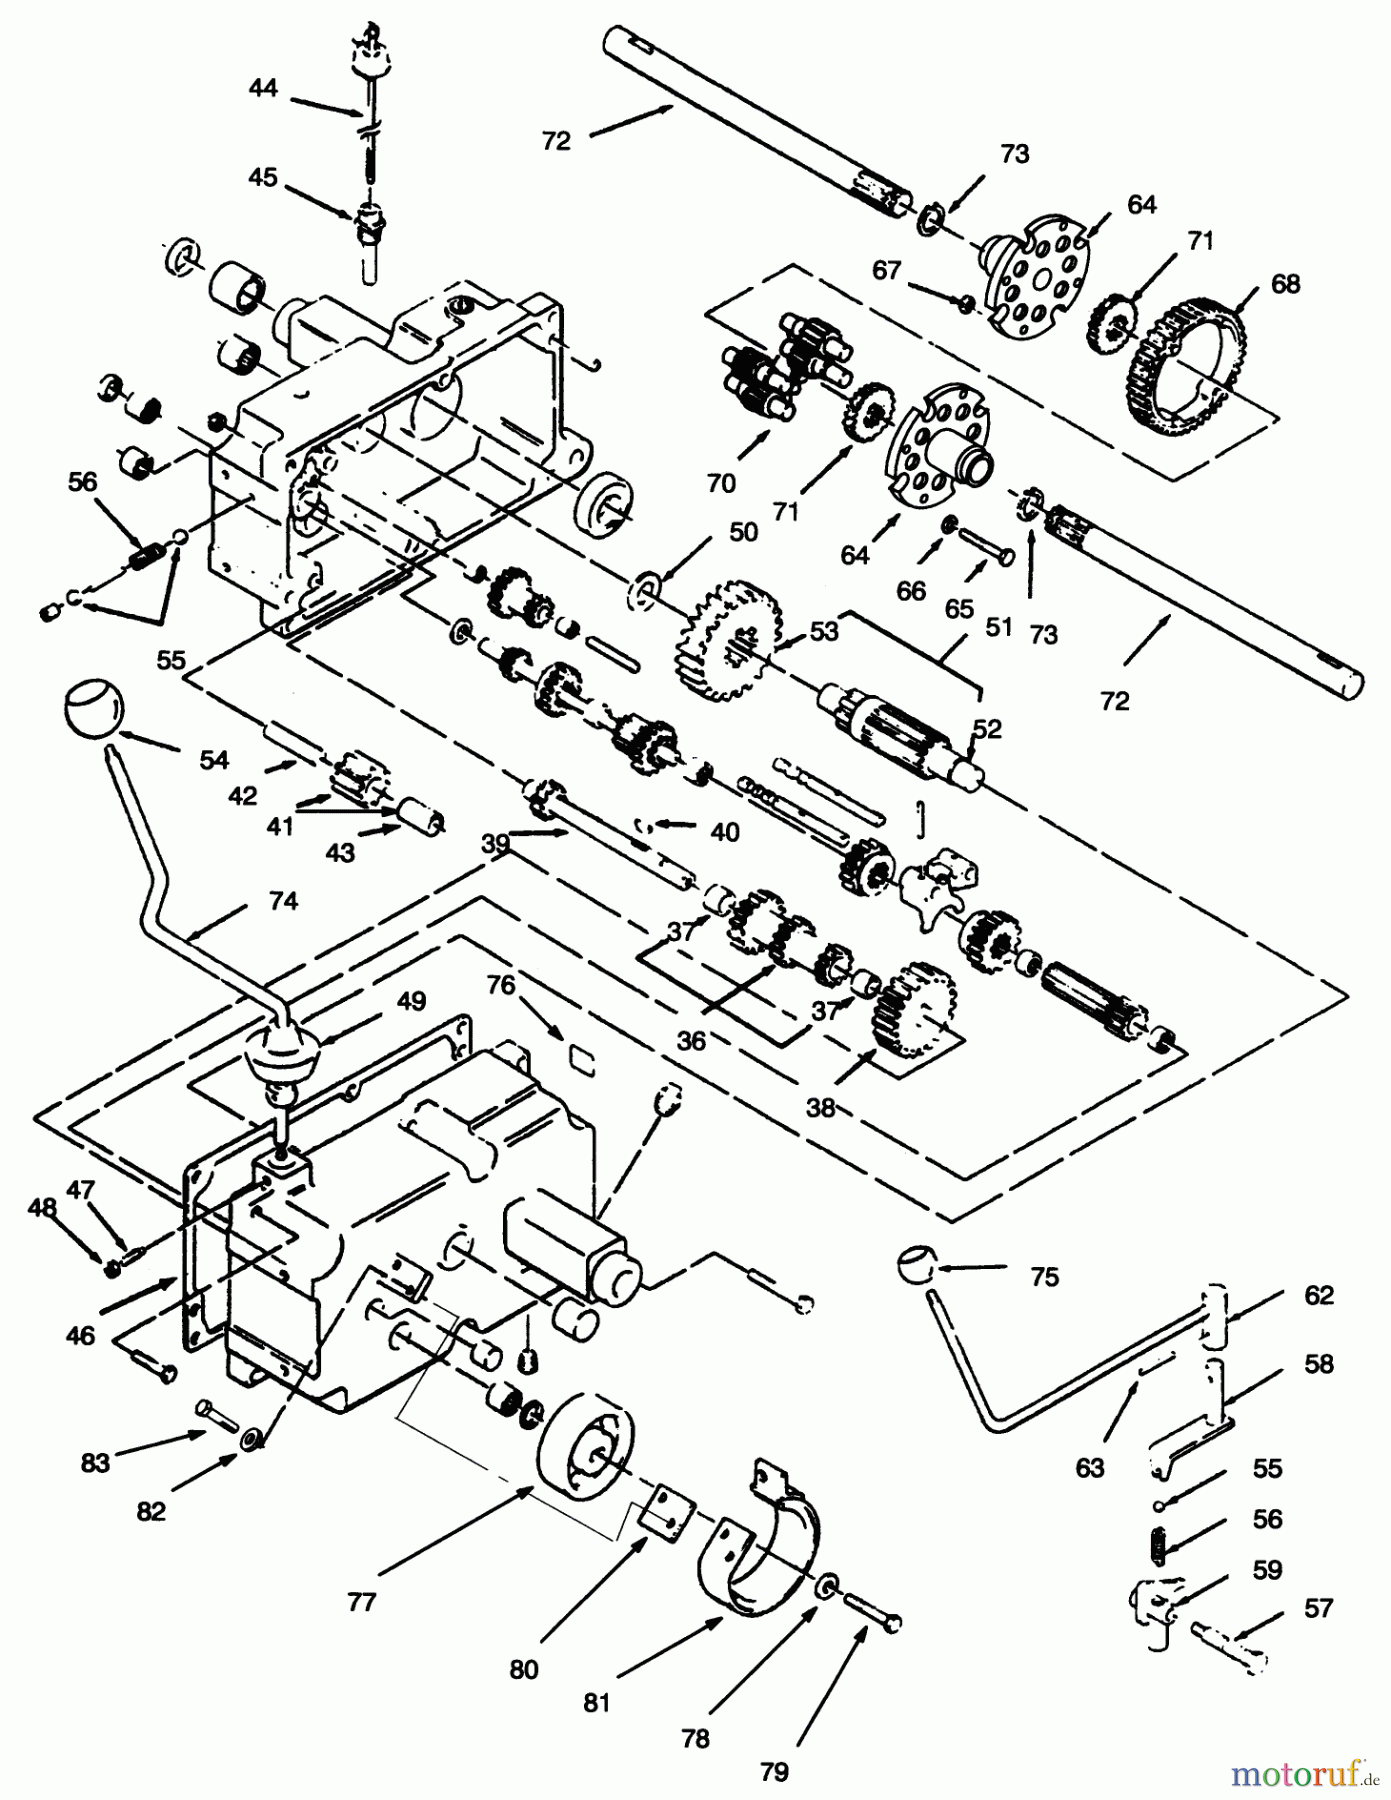  Toro Neu Mowers, Lawn & Garden Tractor Seite 1 73440 (416-8) - Toro 416-8 Garden Tractor, 1995 (5900223-5999999) TRANSMISSION 8-SPEED #2